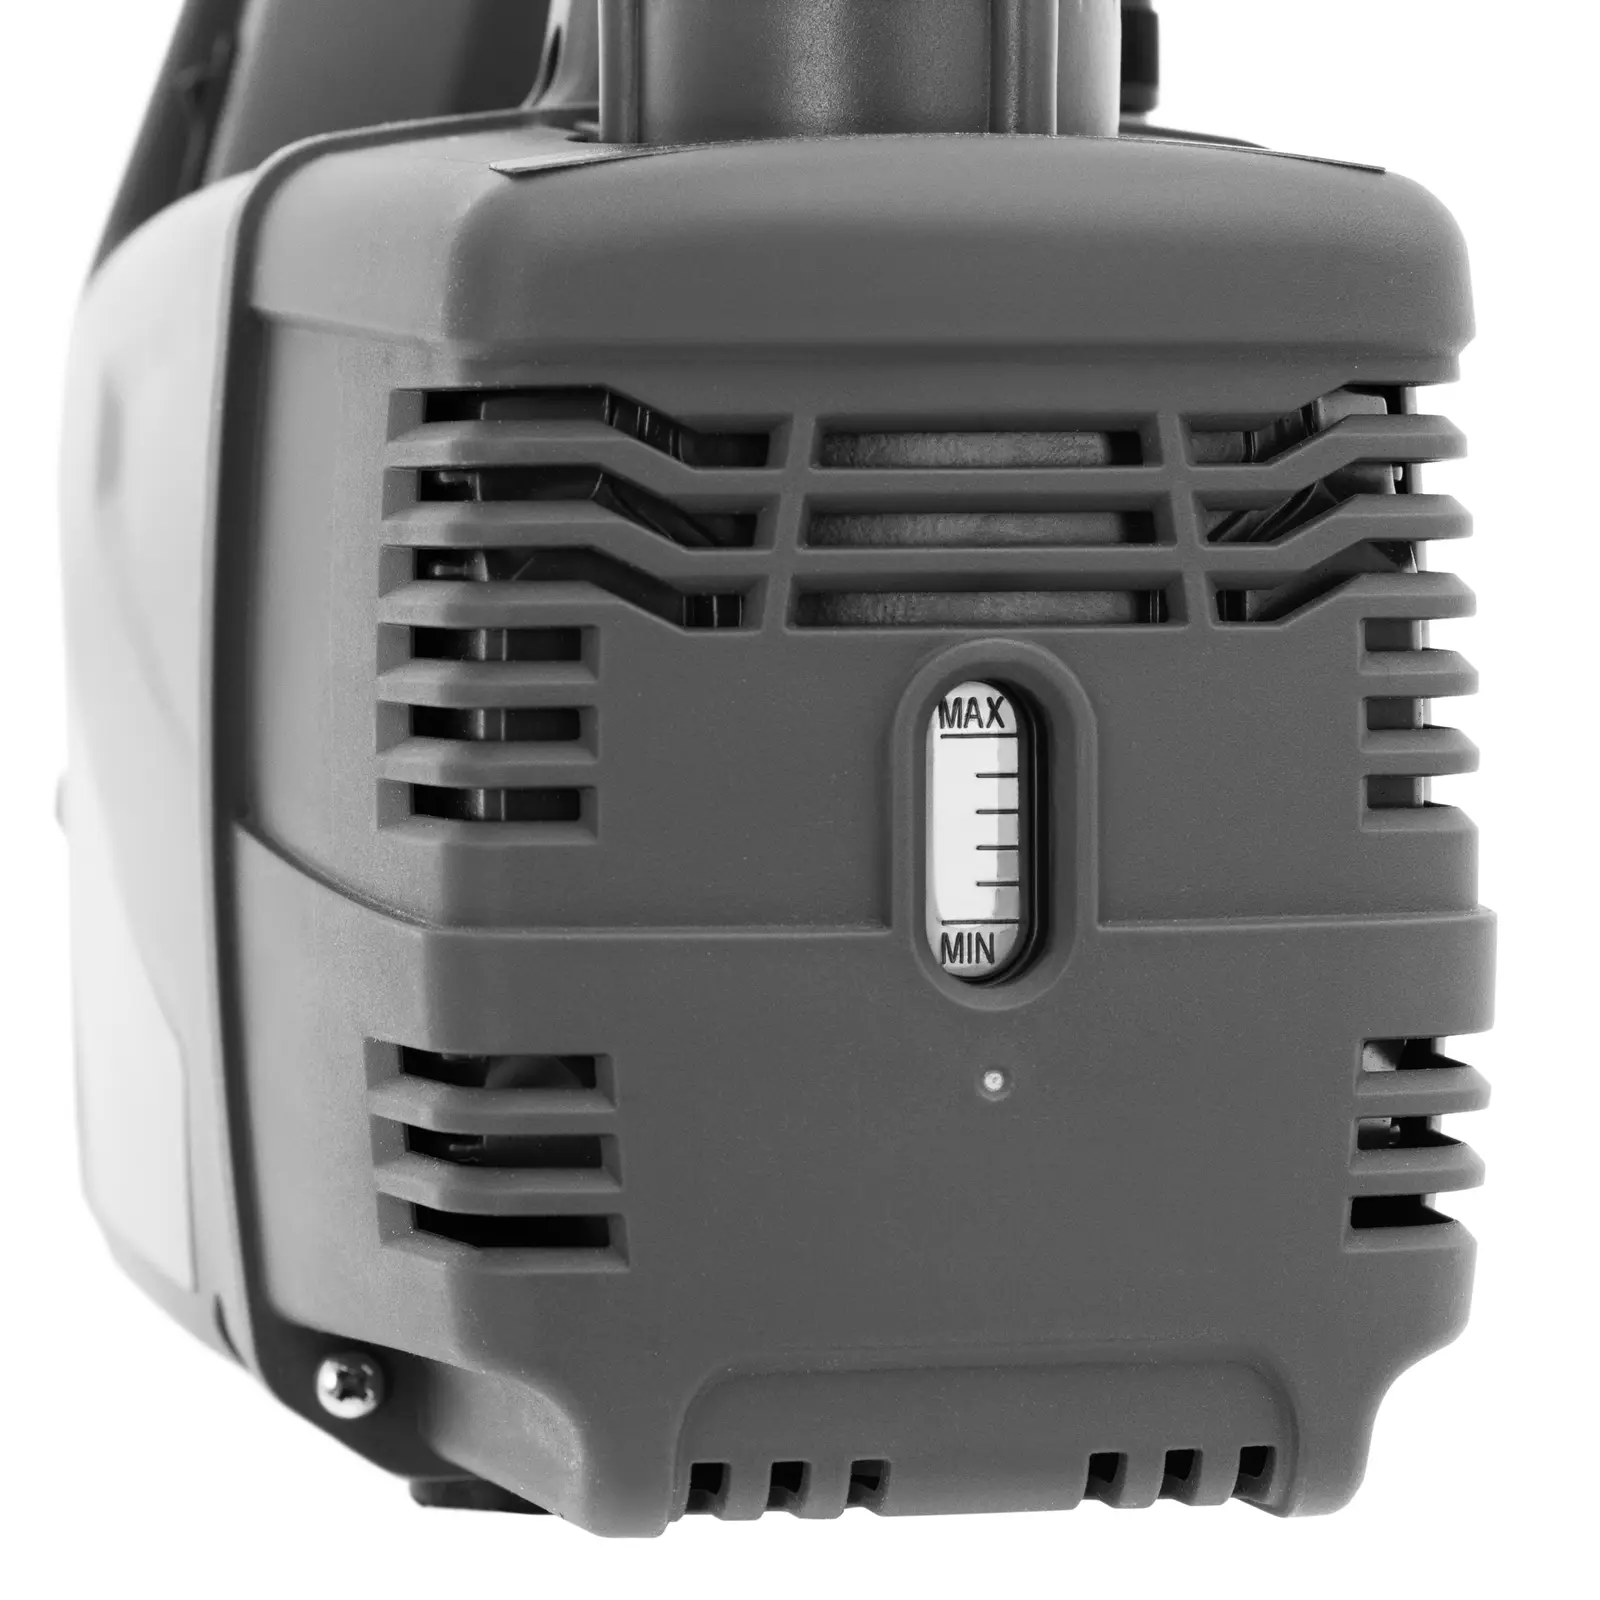 Vakuumpumpe Klimaanlage - für brennbare Kältemittel - 186 W - zweistufiges Design